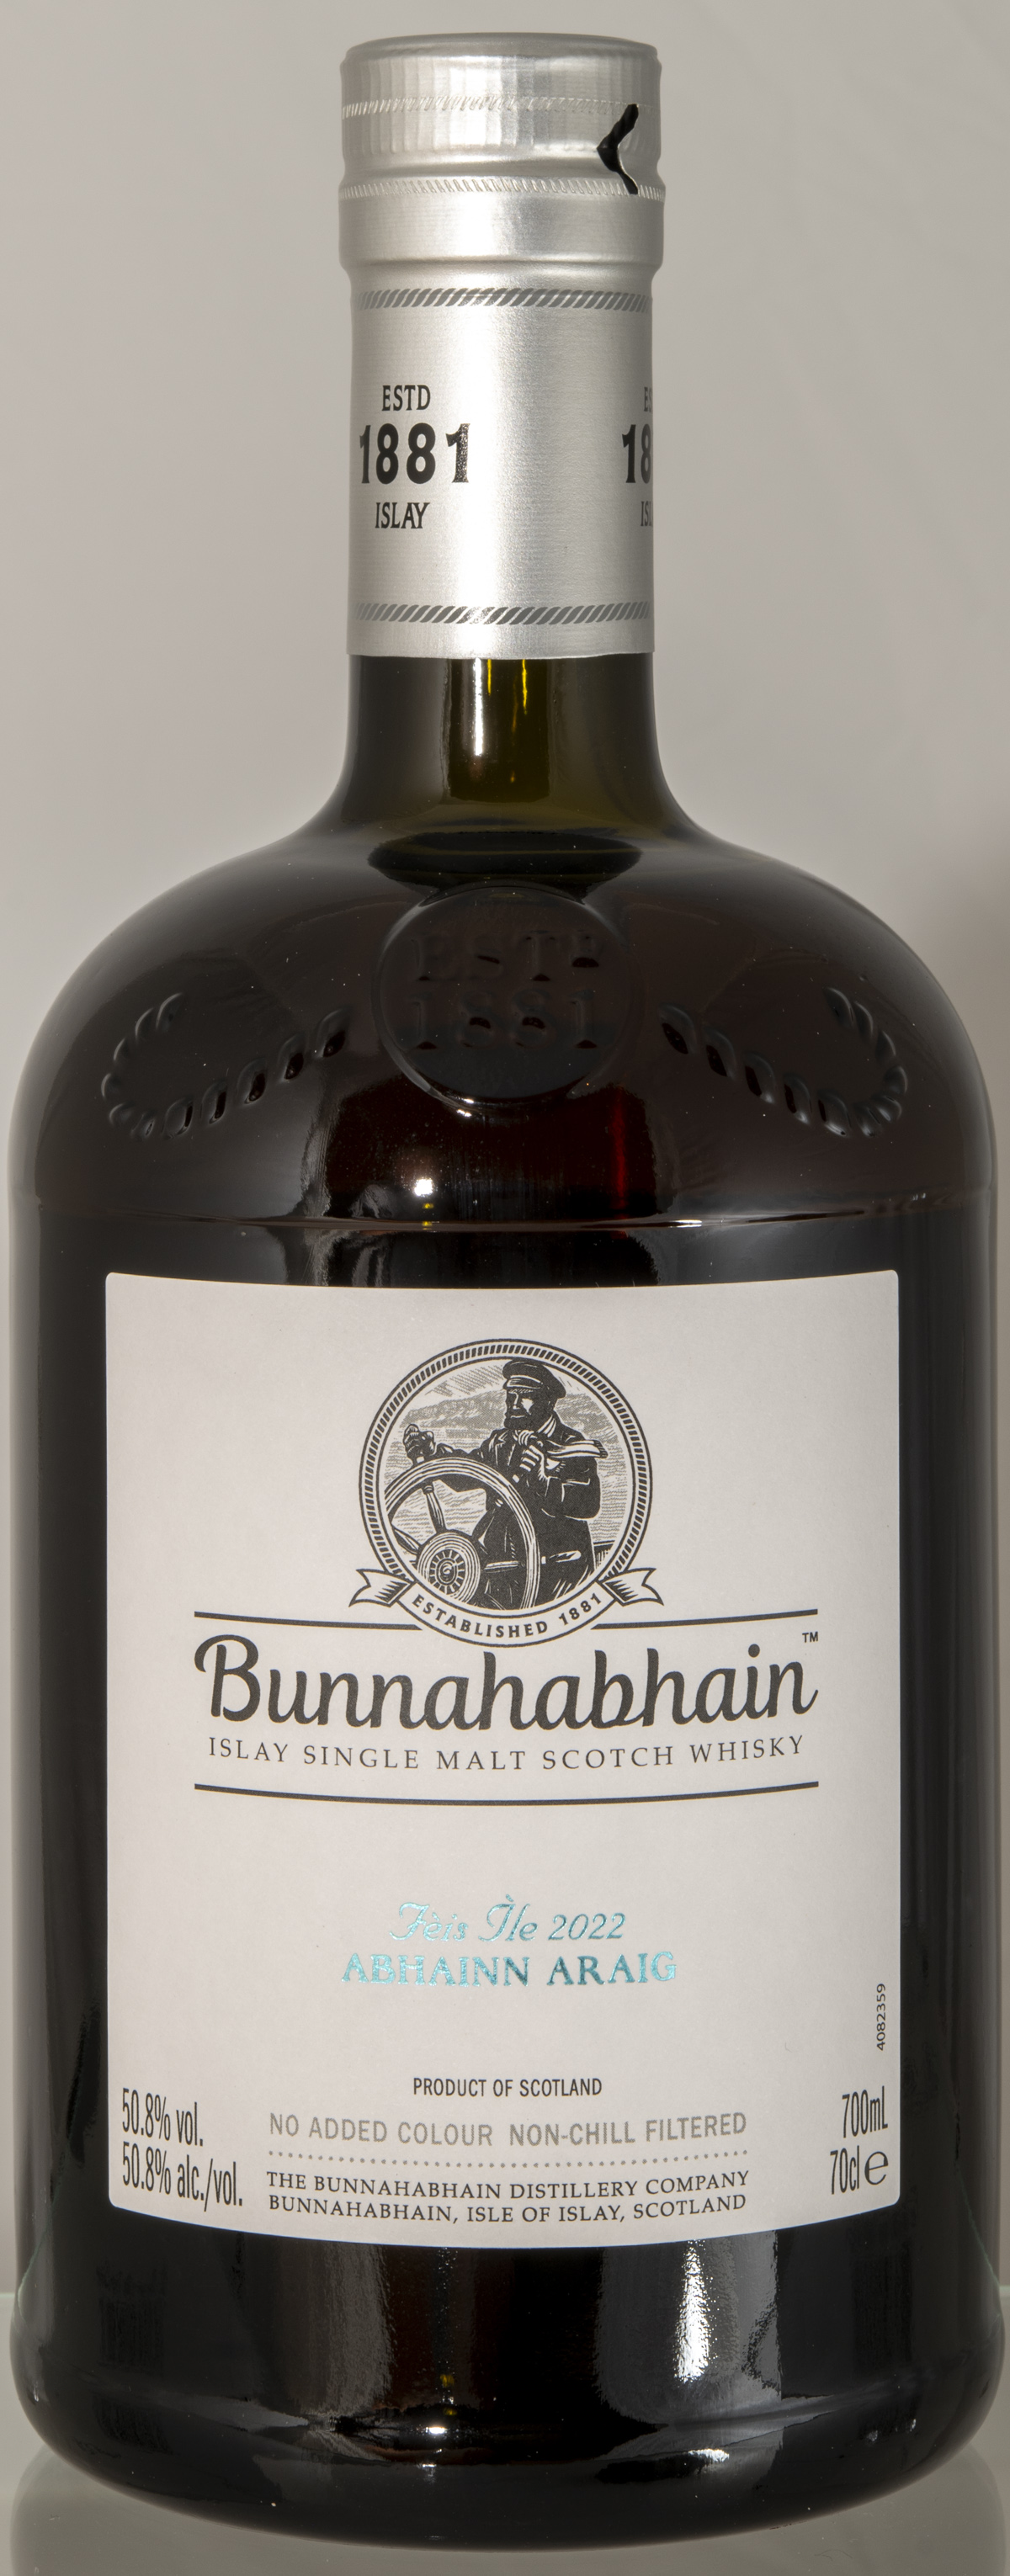 Billede: D85_8343 - Bunnahabhain Feis Isle 2022 Abhainn Araig - bottle front.jpg